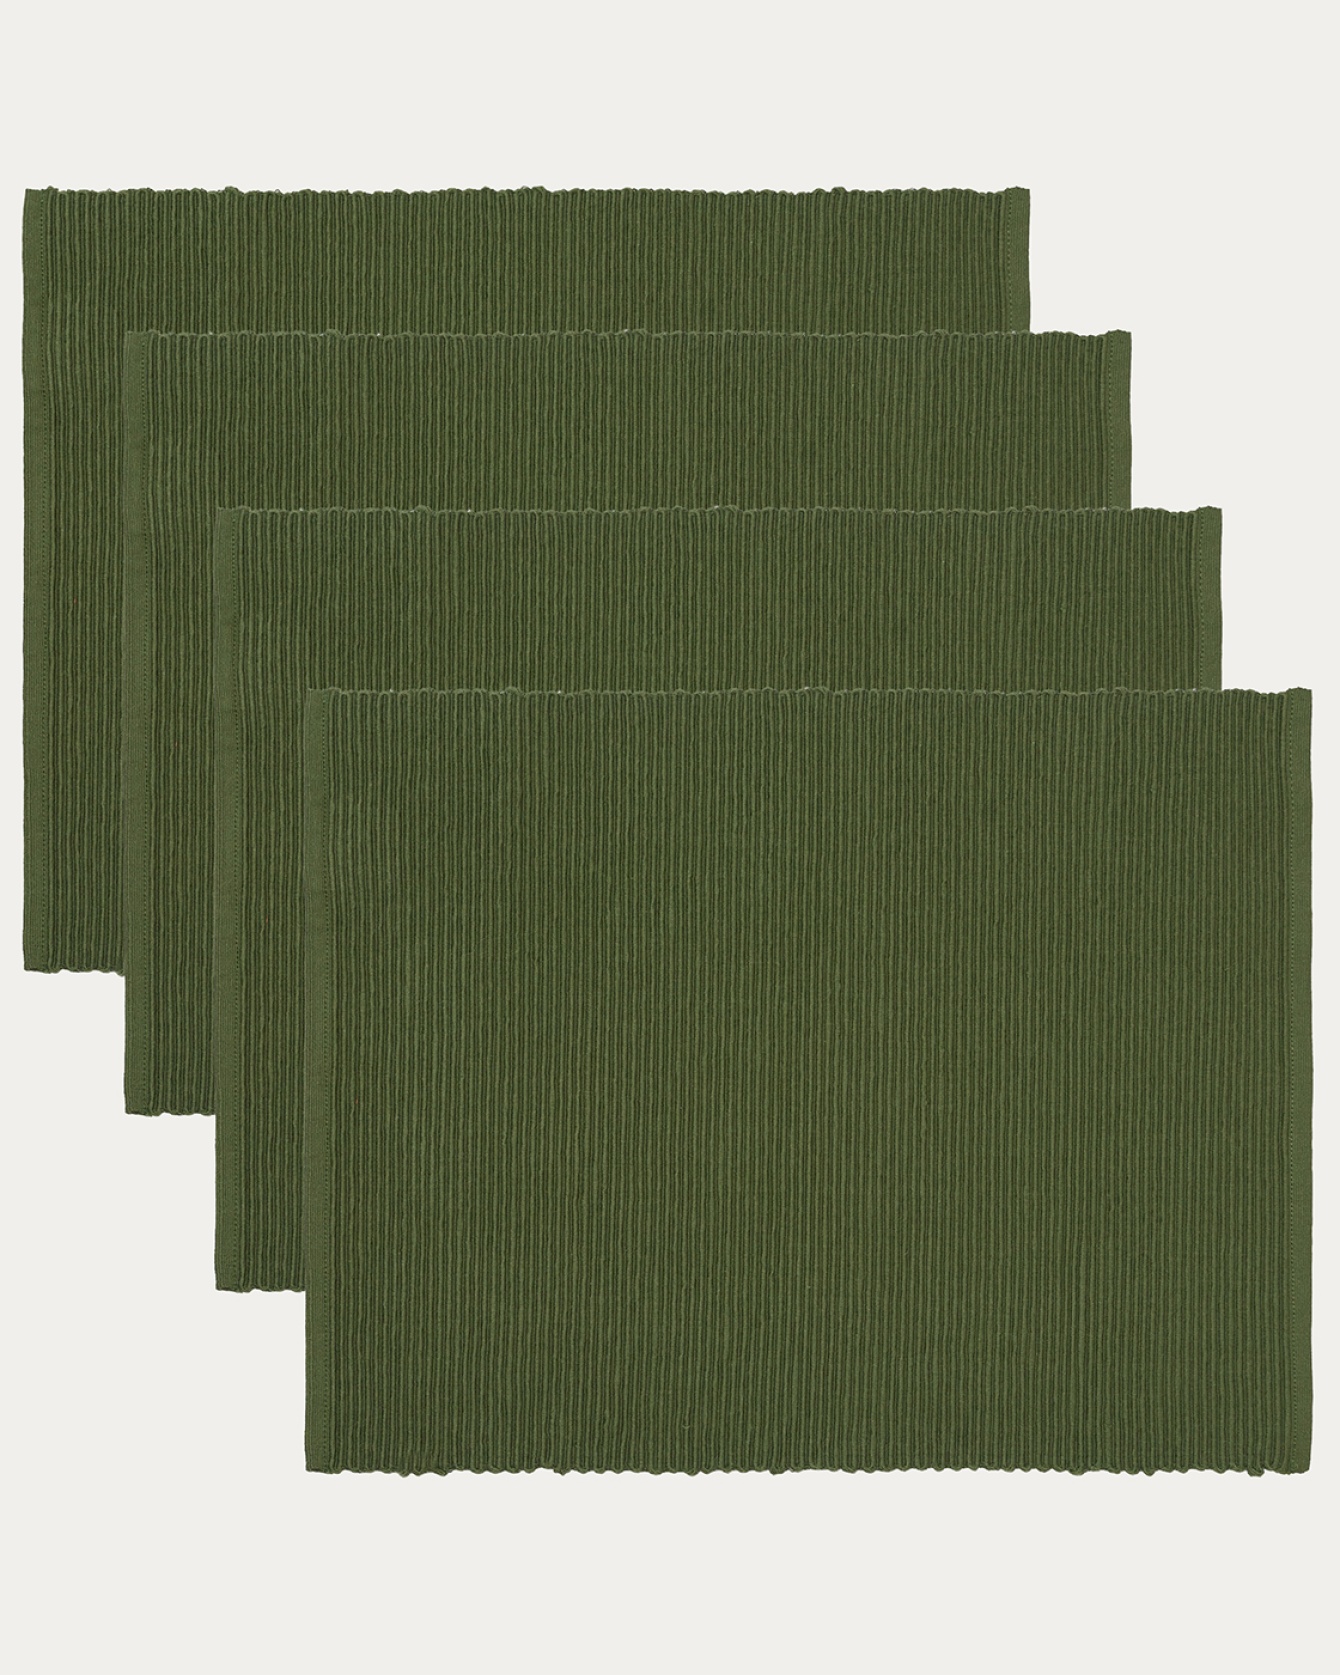 Produktbild mörk olivgrön UNI bordstablett av mjuk bomull i ribbad kvalité från LINUM DESIGN. Storlek 35x46 cm och säljs i 4-pack.